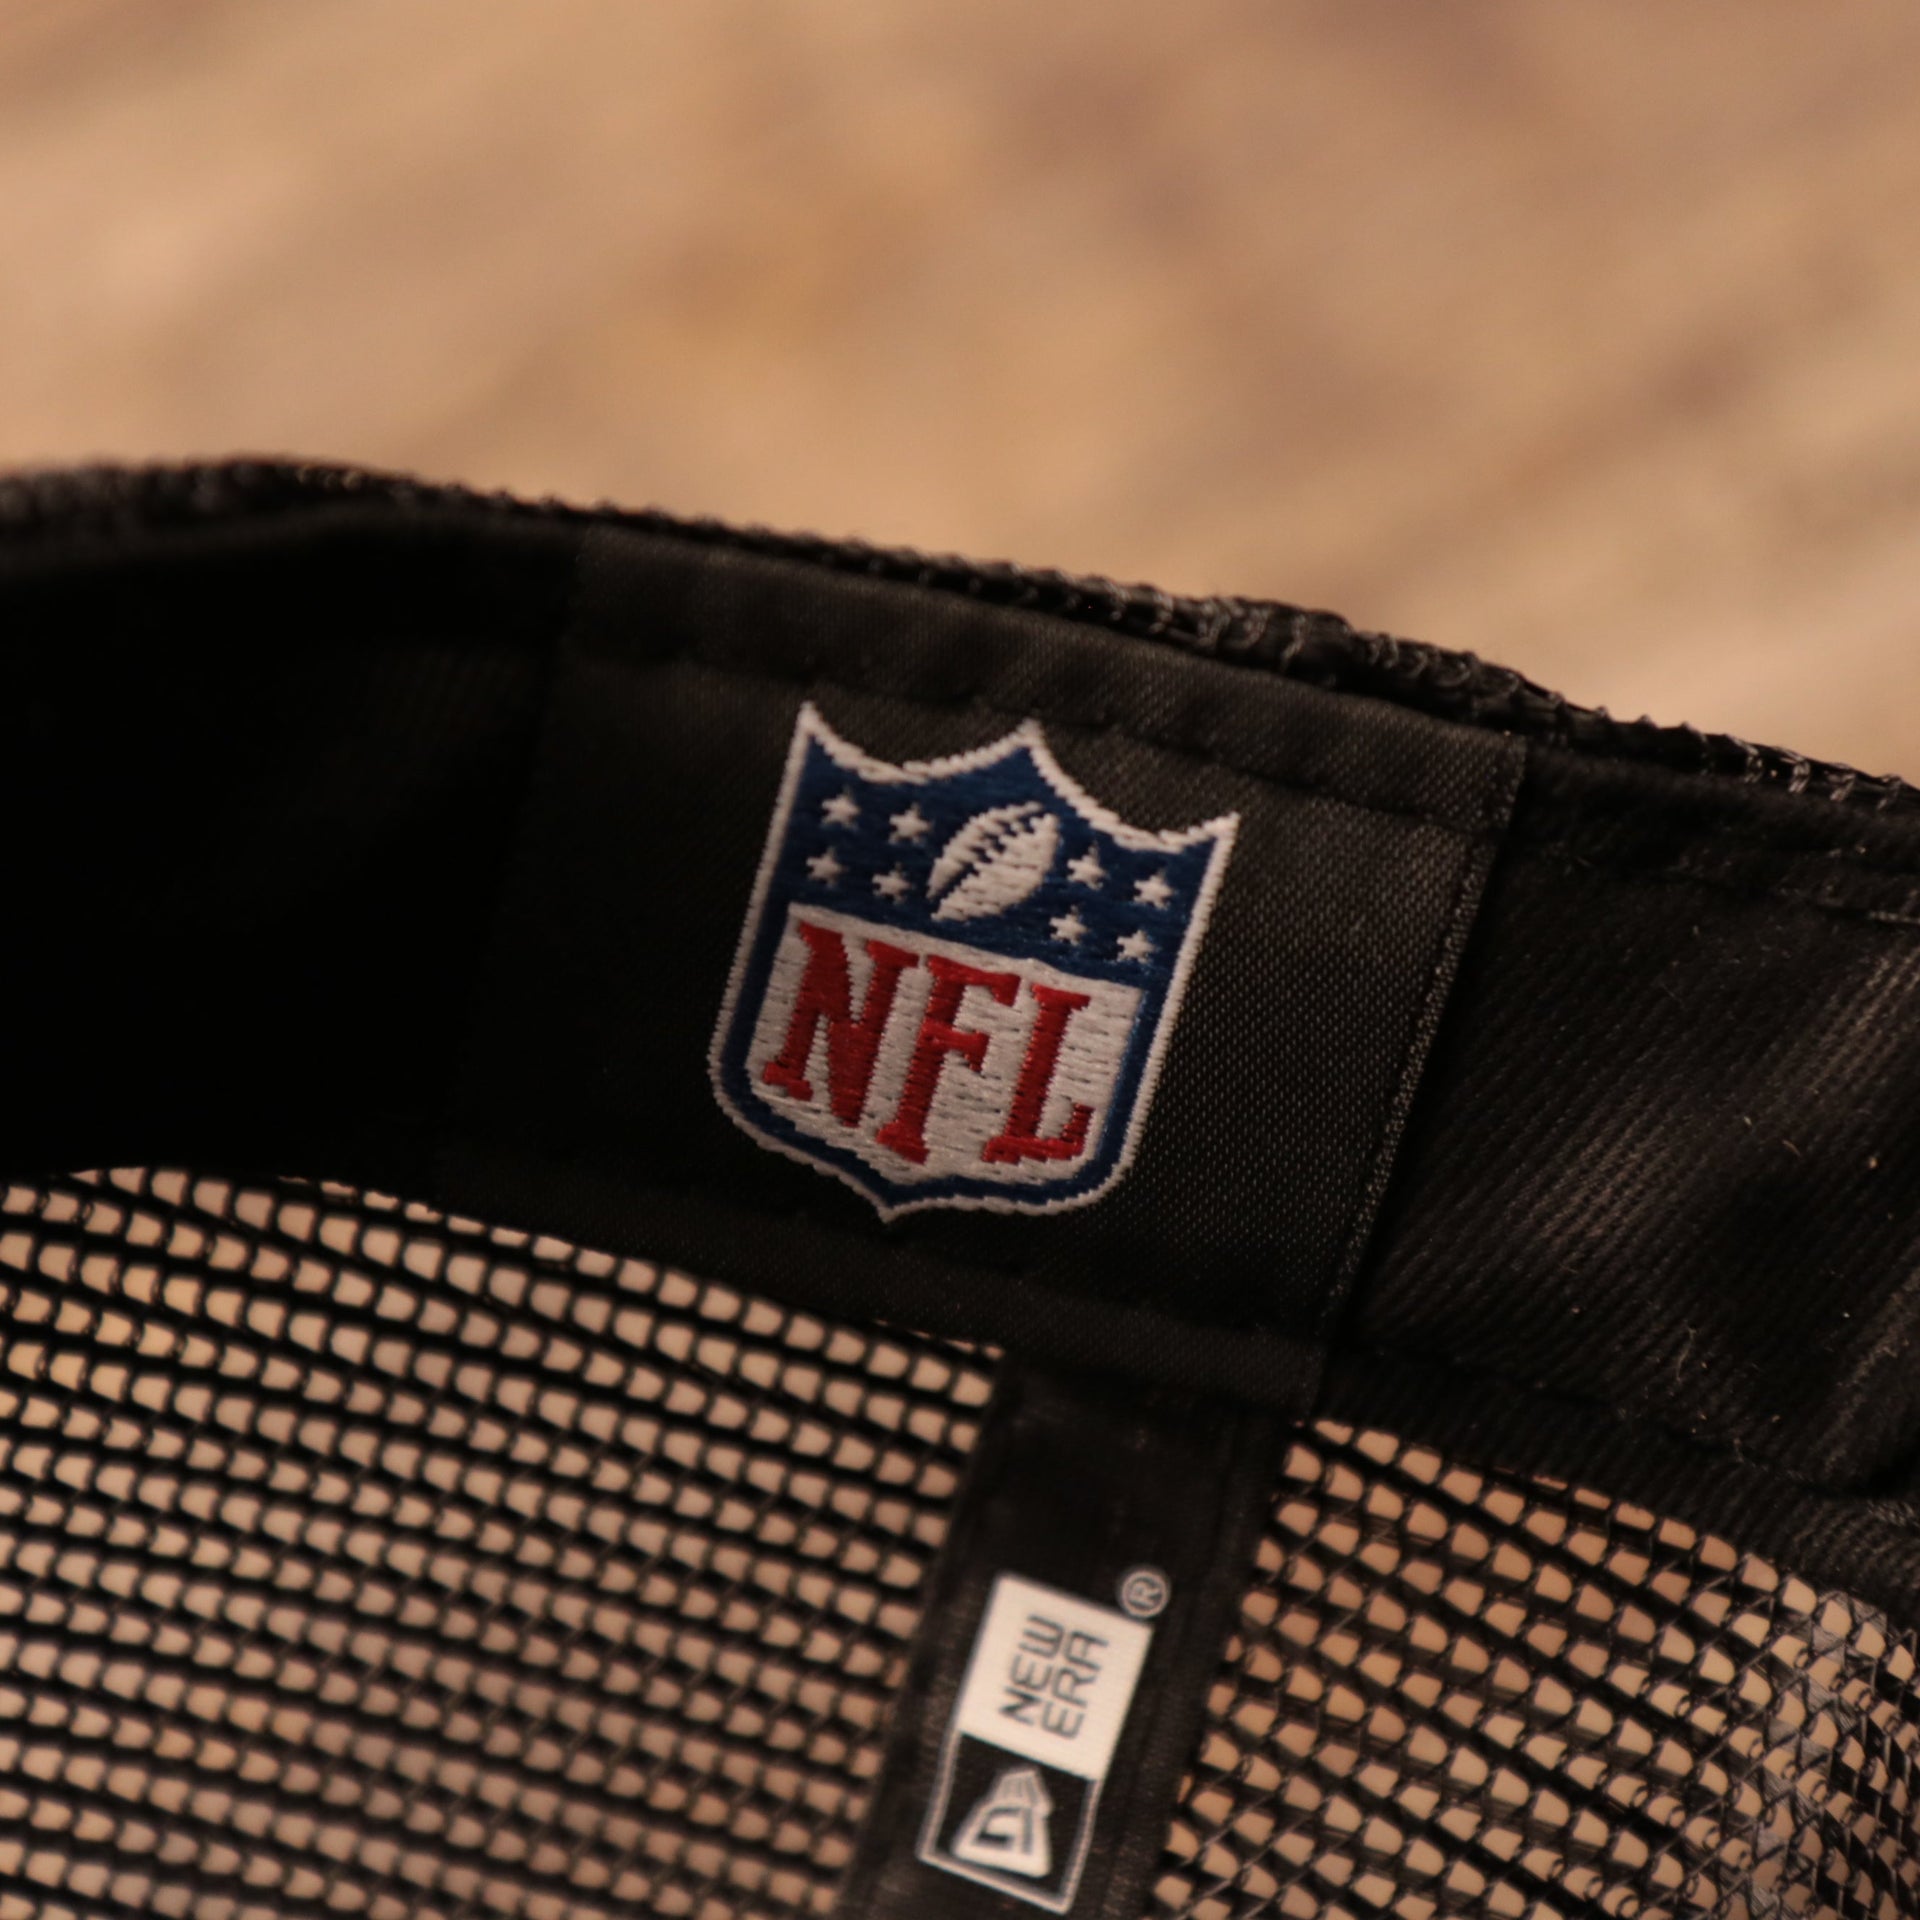 The NFL logo on the inside of the Philadelphia Eagles 2021 NFL draft cap.